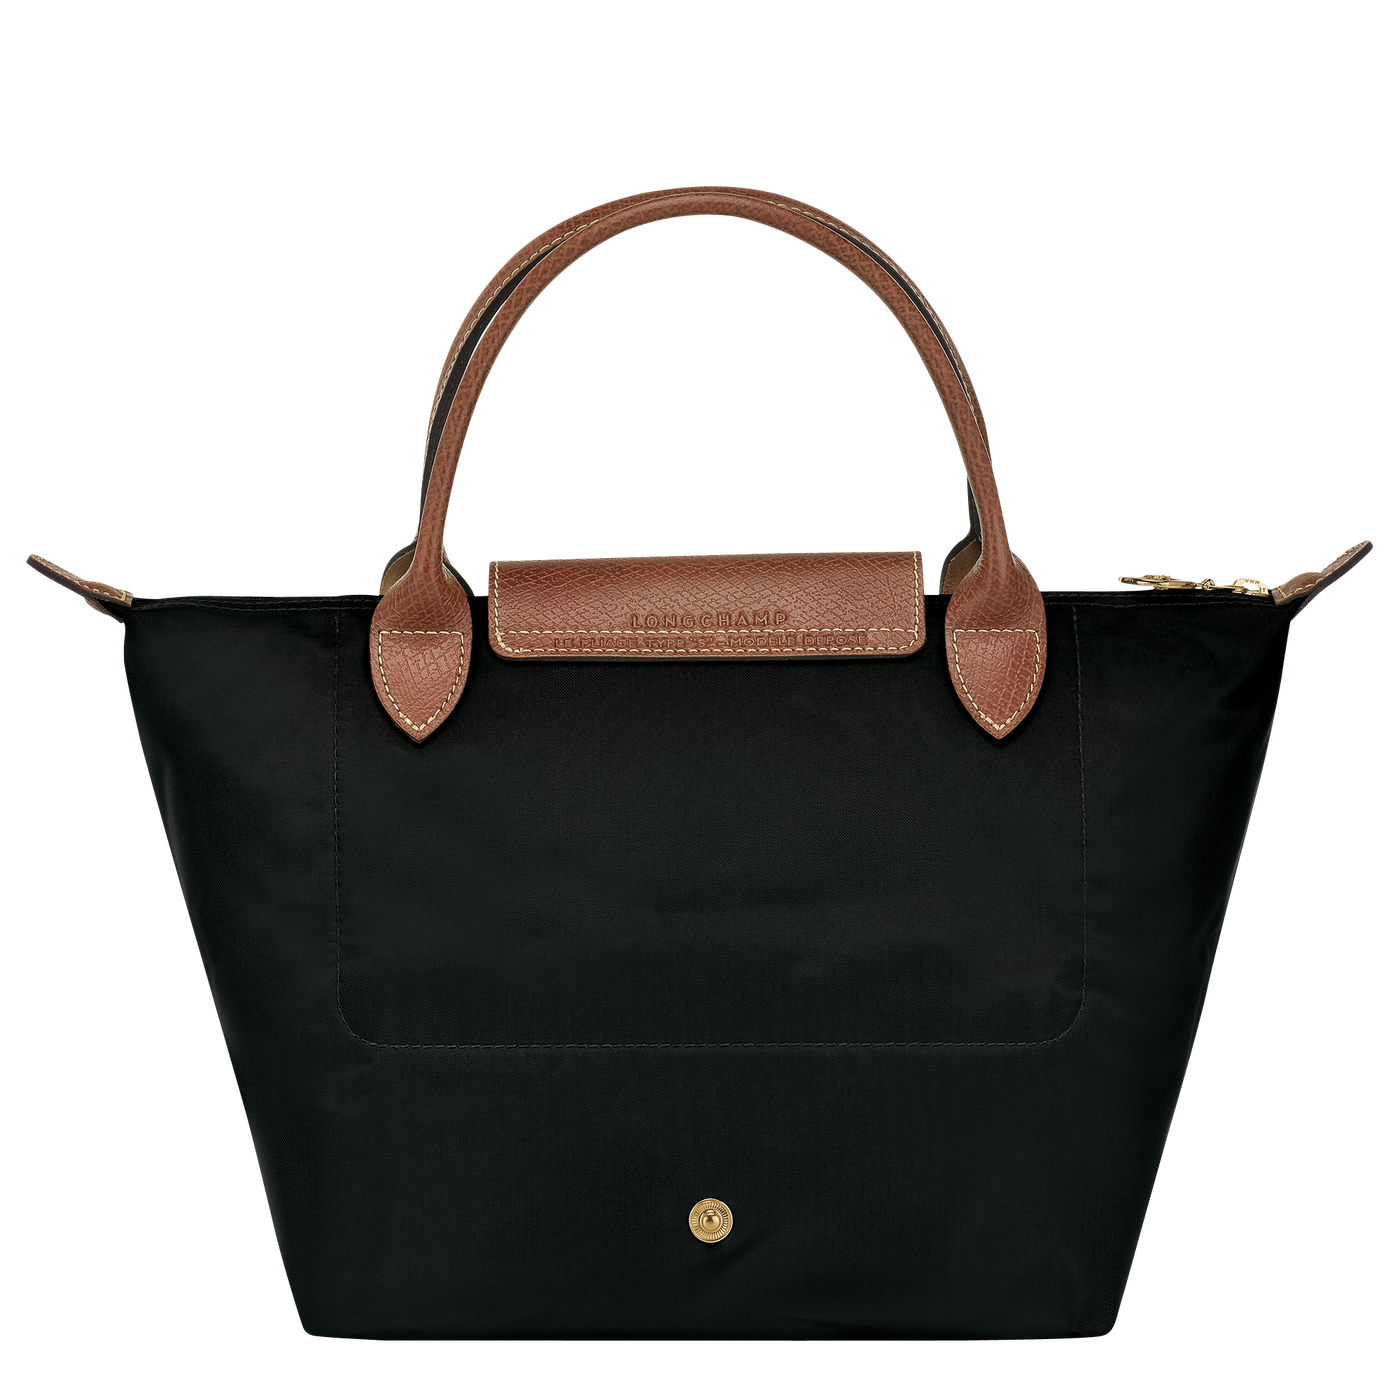 Le Pliage Original Top Handle Bags - 1621089